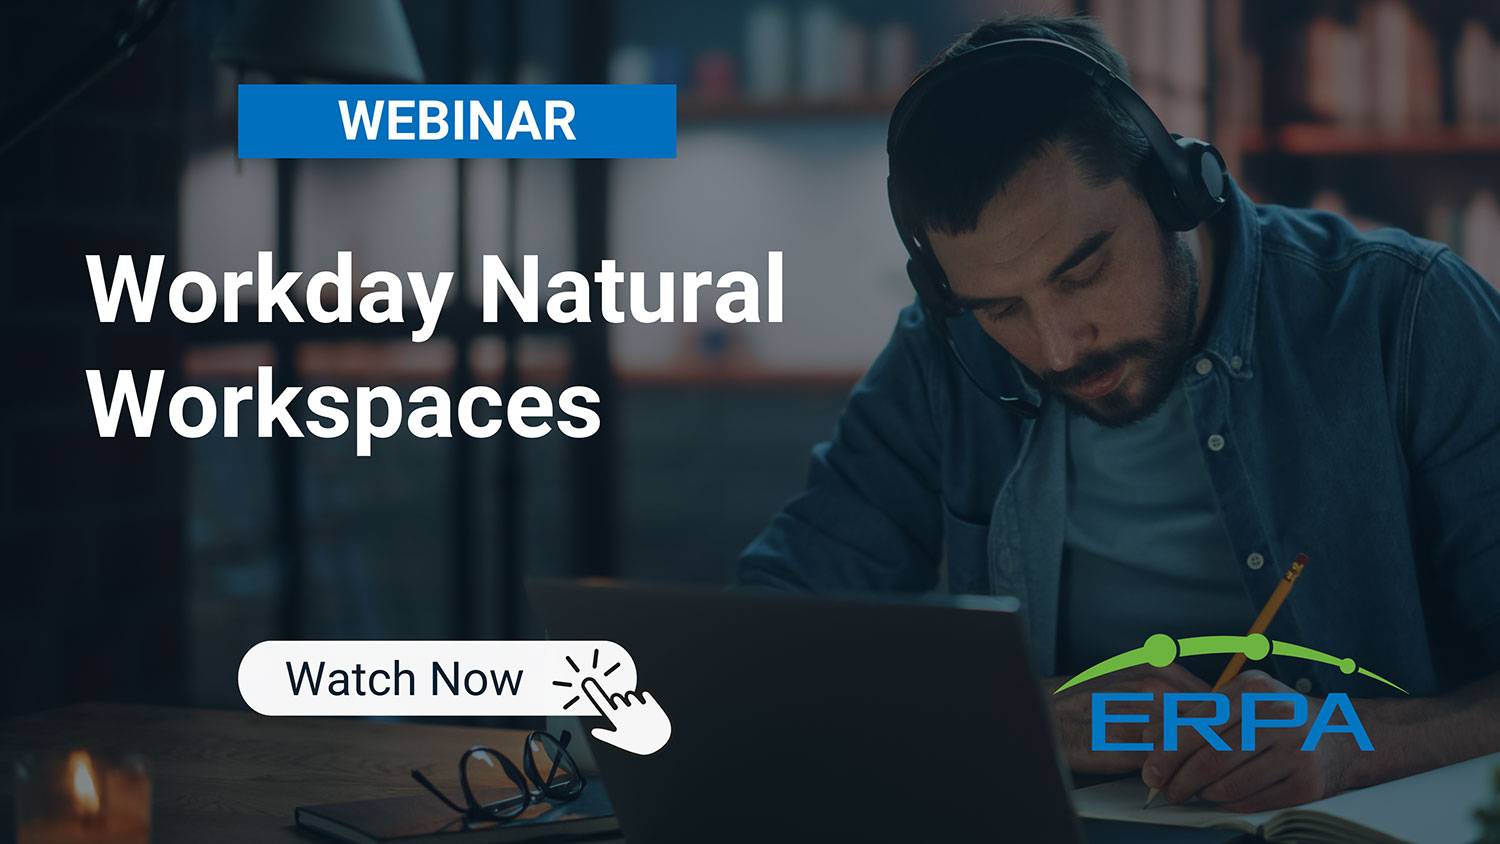 ERPA Webinar: Workday Natural Workspaces